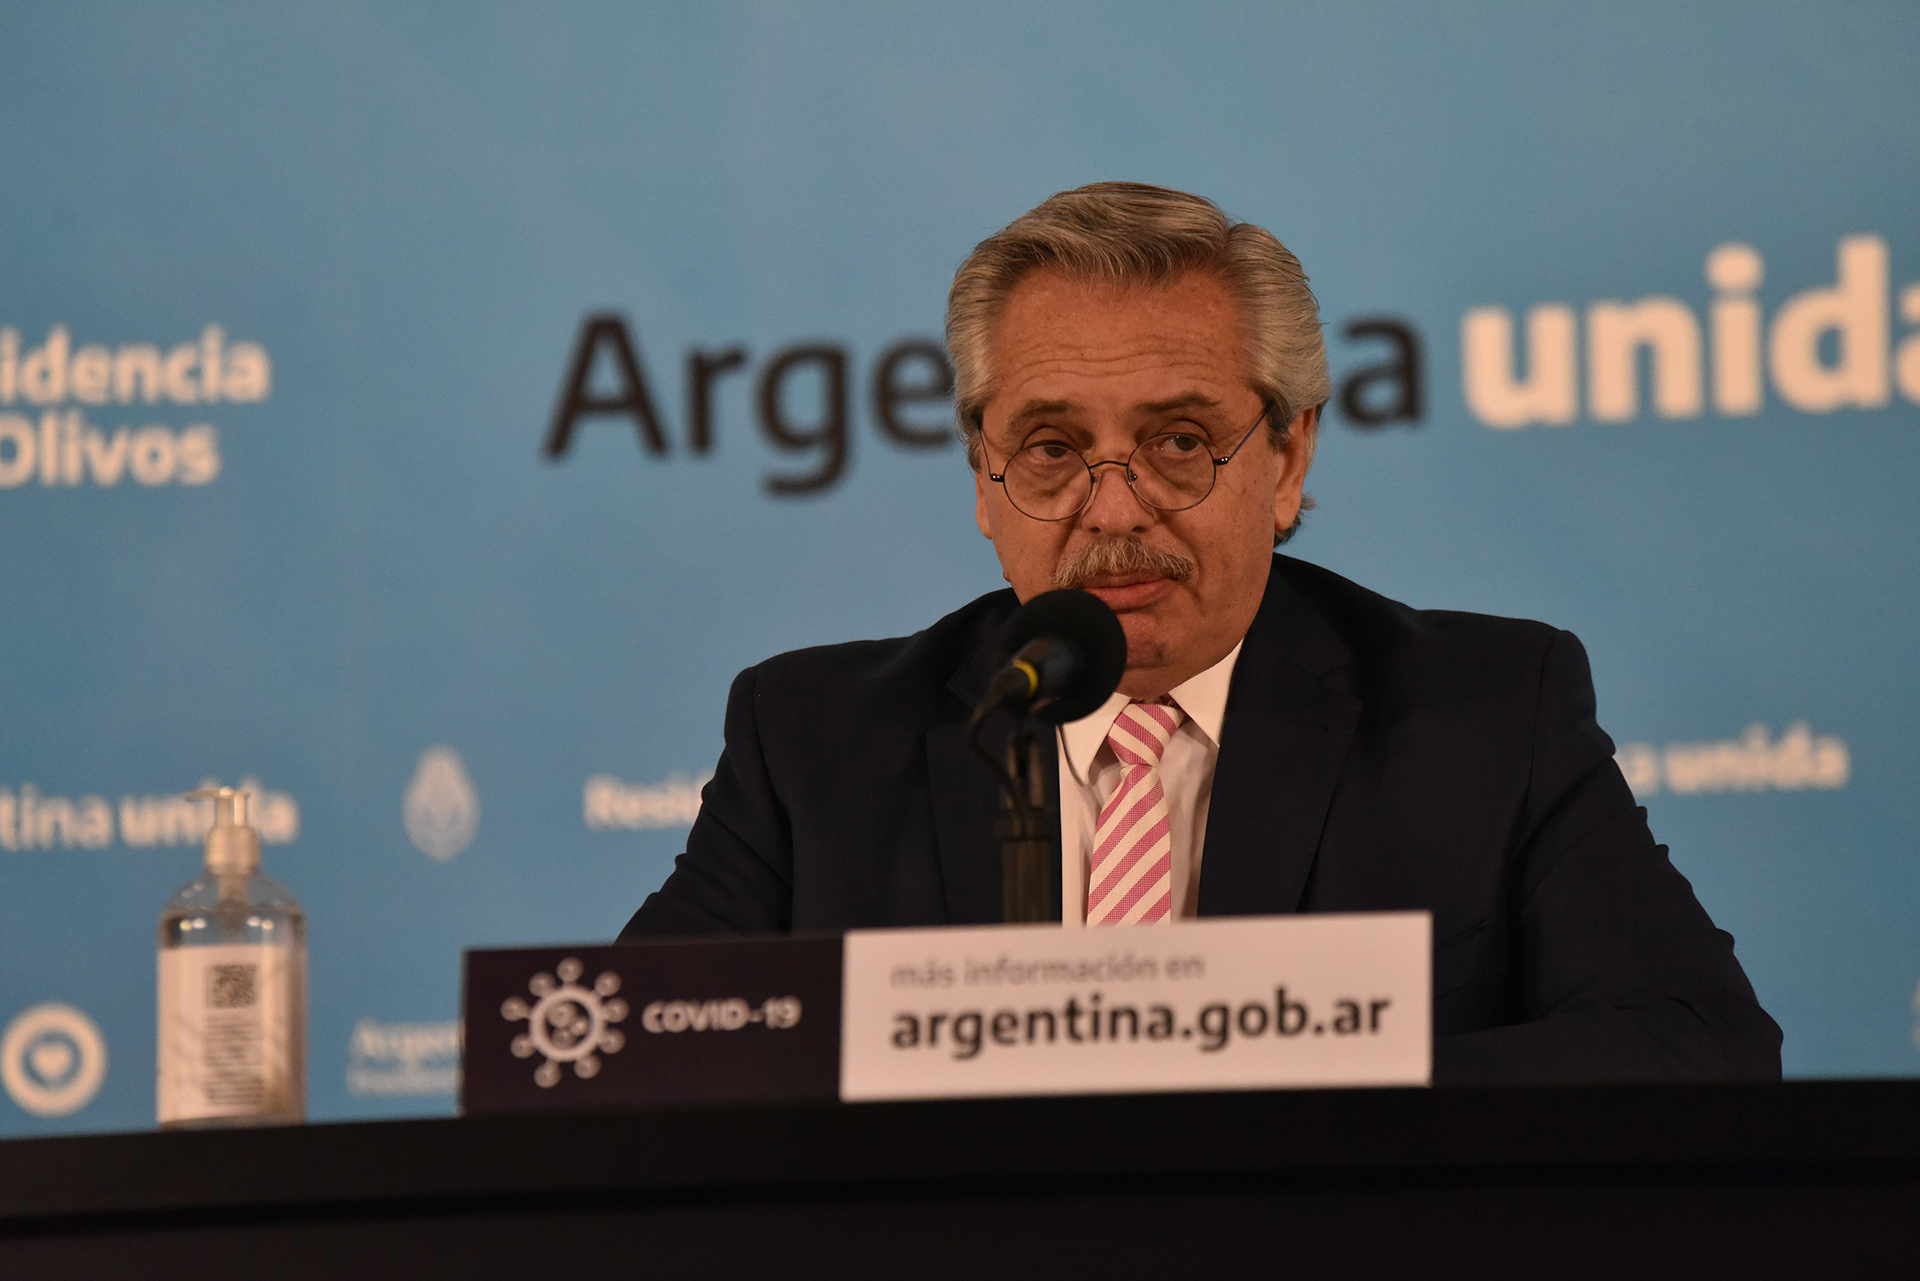 Alberto Fernández, en la conferencia de prensa sobre la elaboración de una vacuna contra el coronavirus.